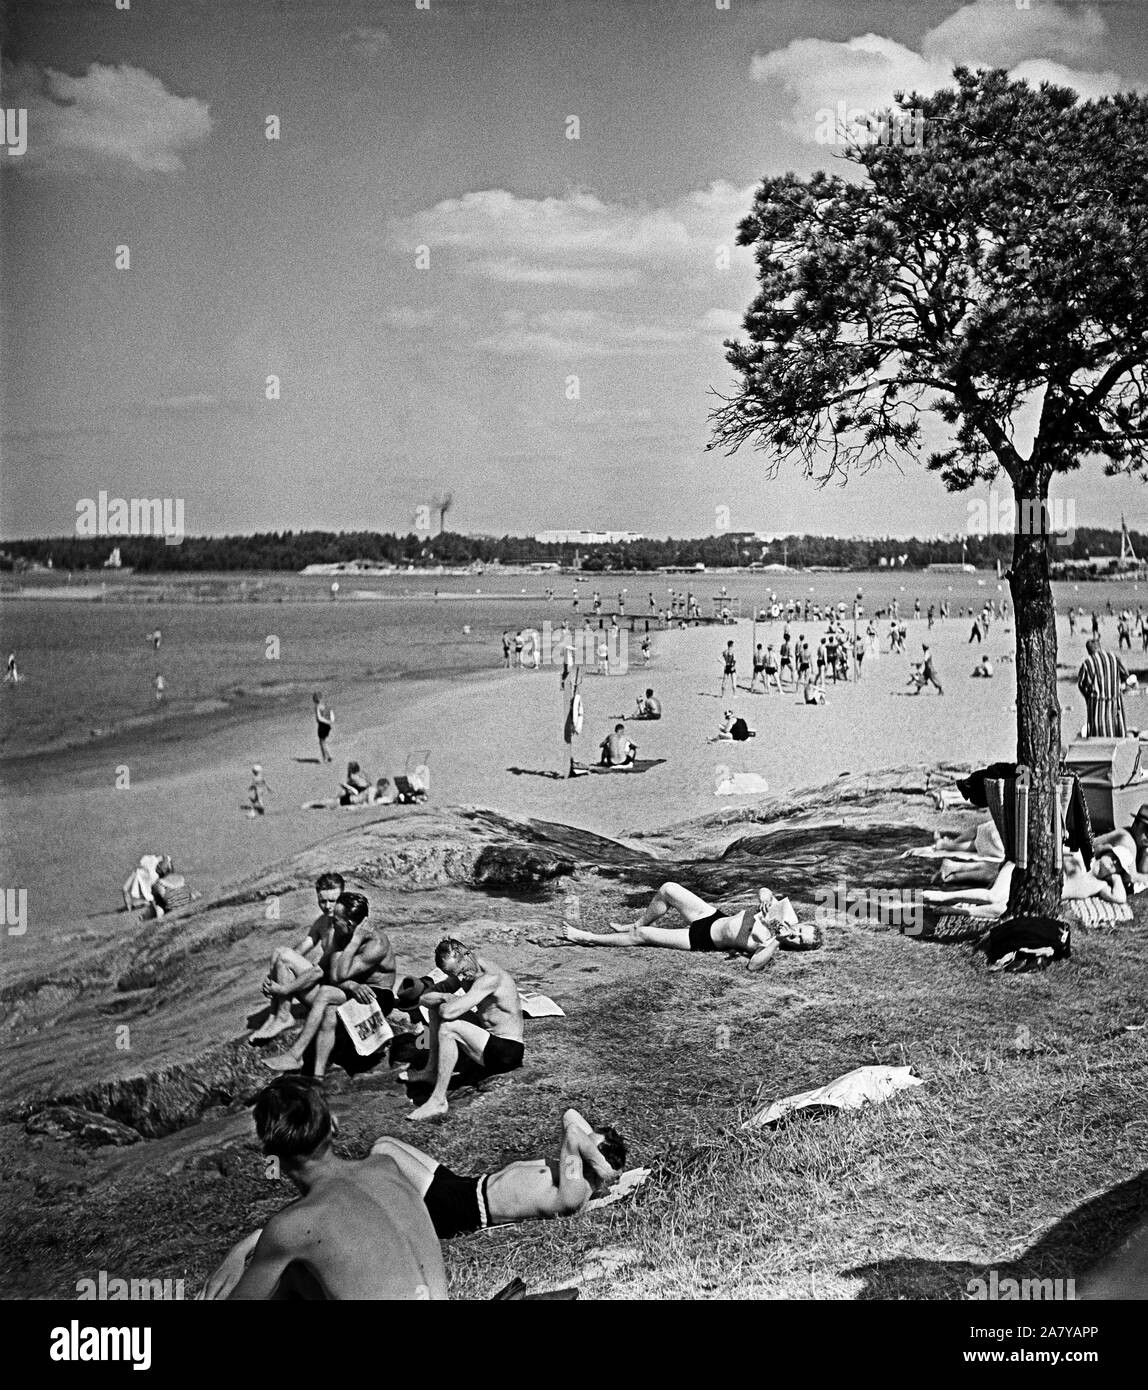 Helsinki, Hietaniemi beach, June 1948. People sunbathing. In the horizon Taivalluoto and Rajasaari. Helsinki. Hietaniemen uimaranta, näkymä kohti Taivalluotoa ja Rajasaarta. Auringonottajia uimarannalla. Stock Photo